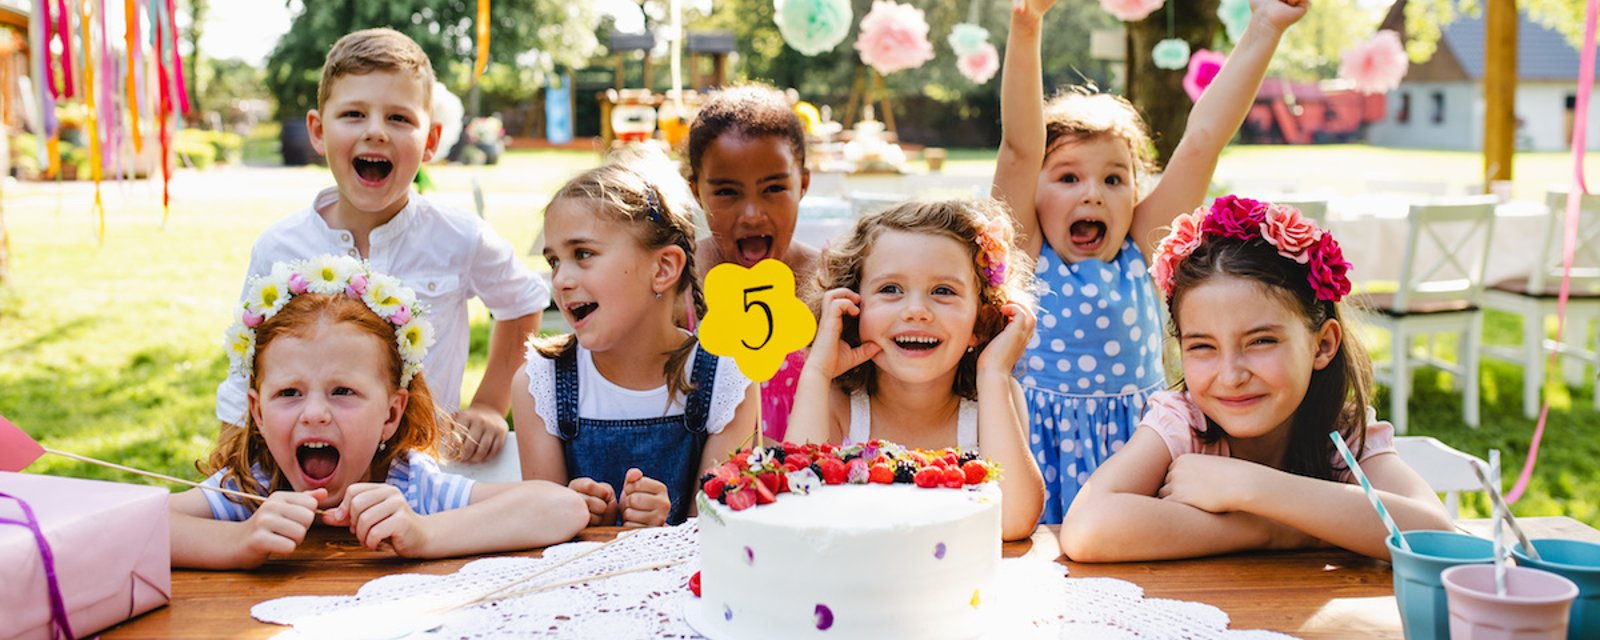 La nouvelle tendance en matière de fêtes d’enfants: le « fiver birthday party »